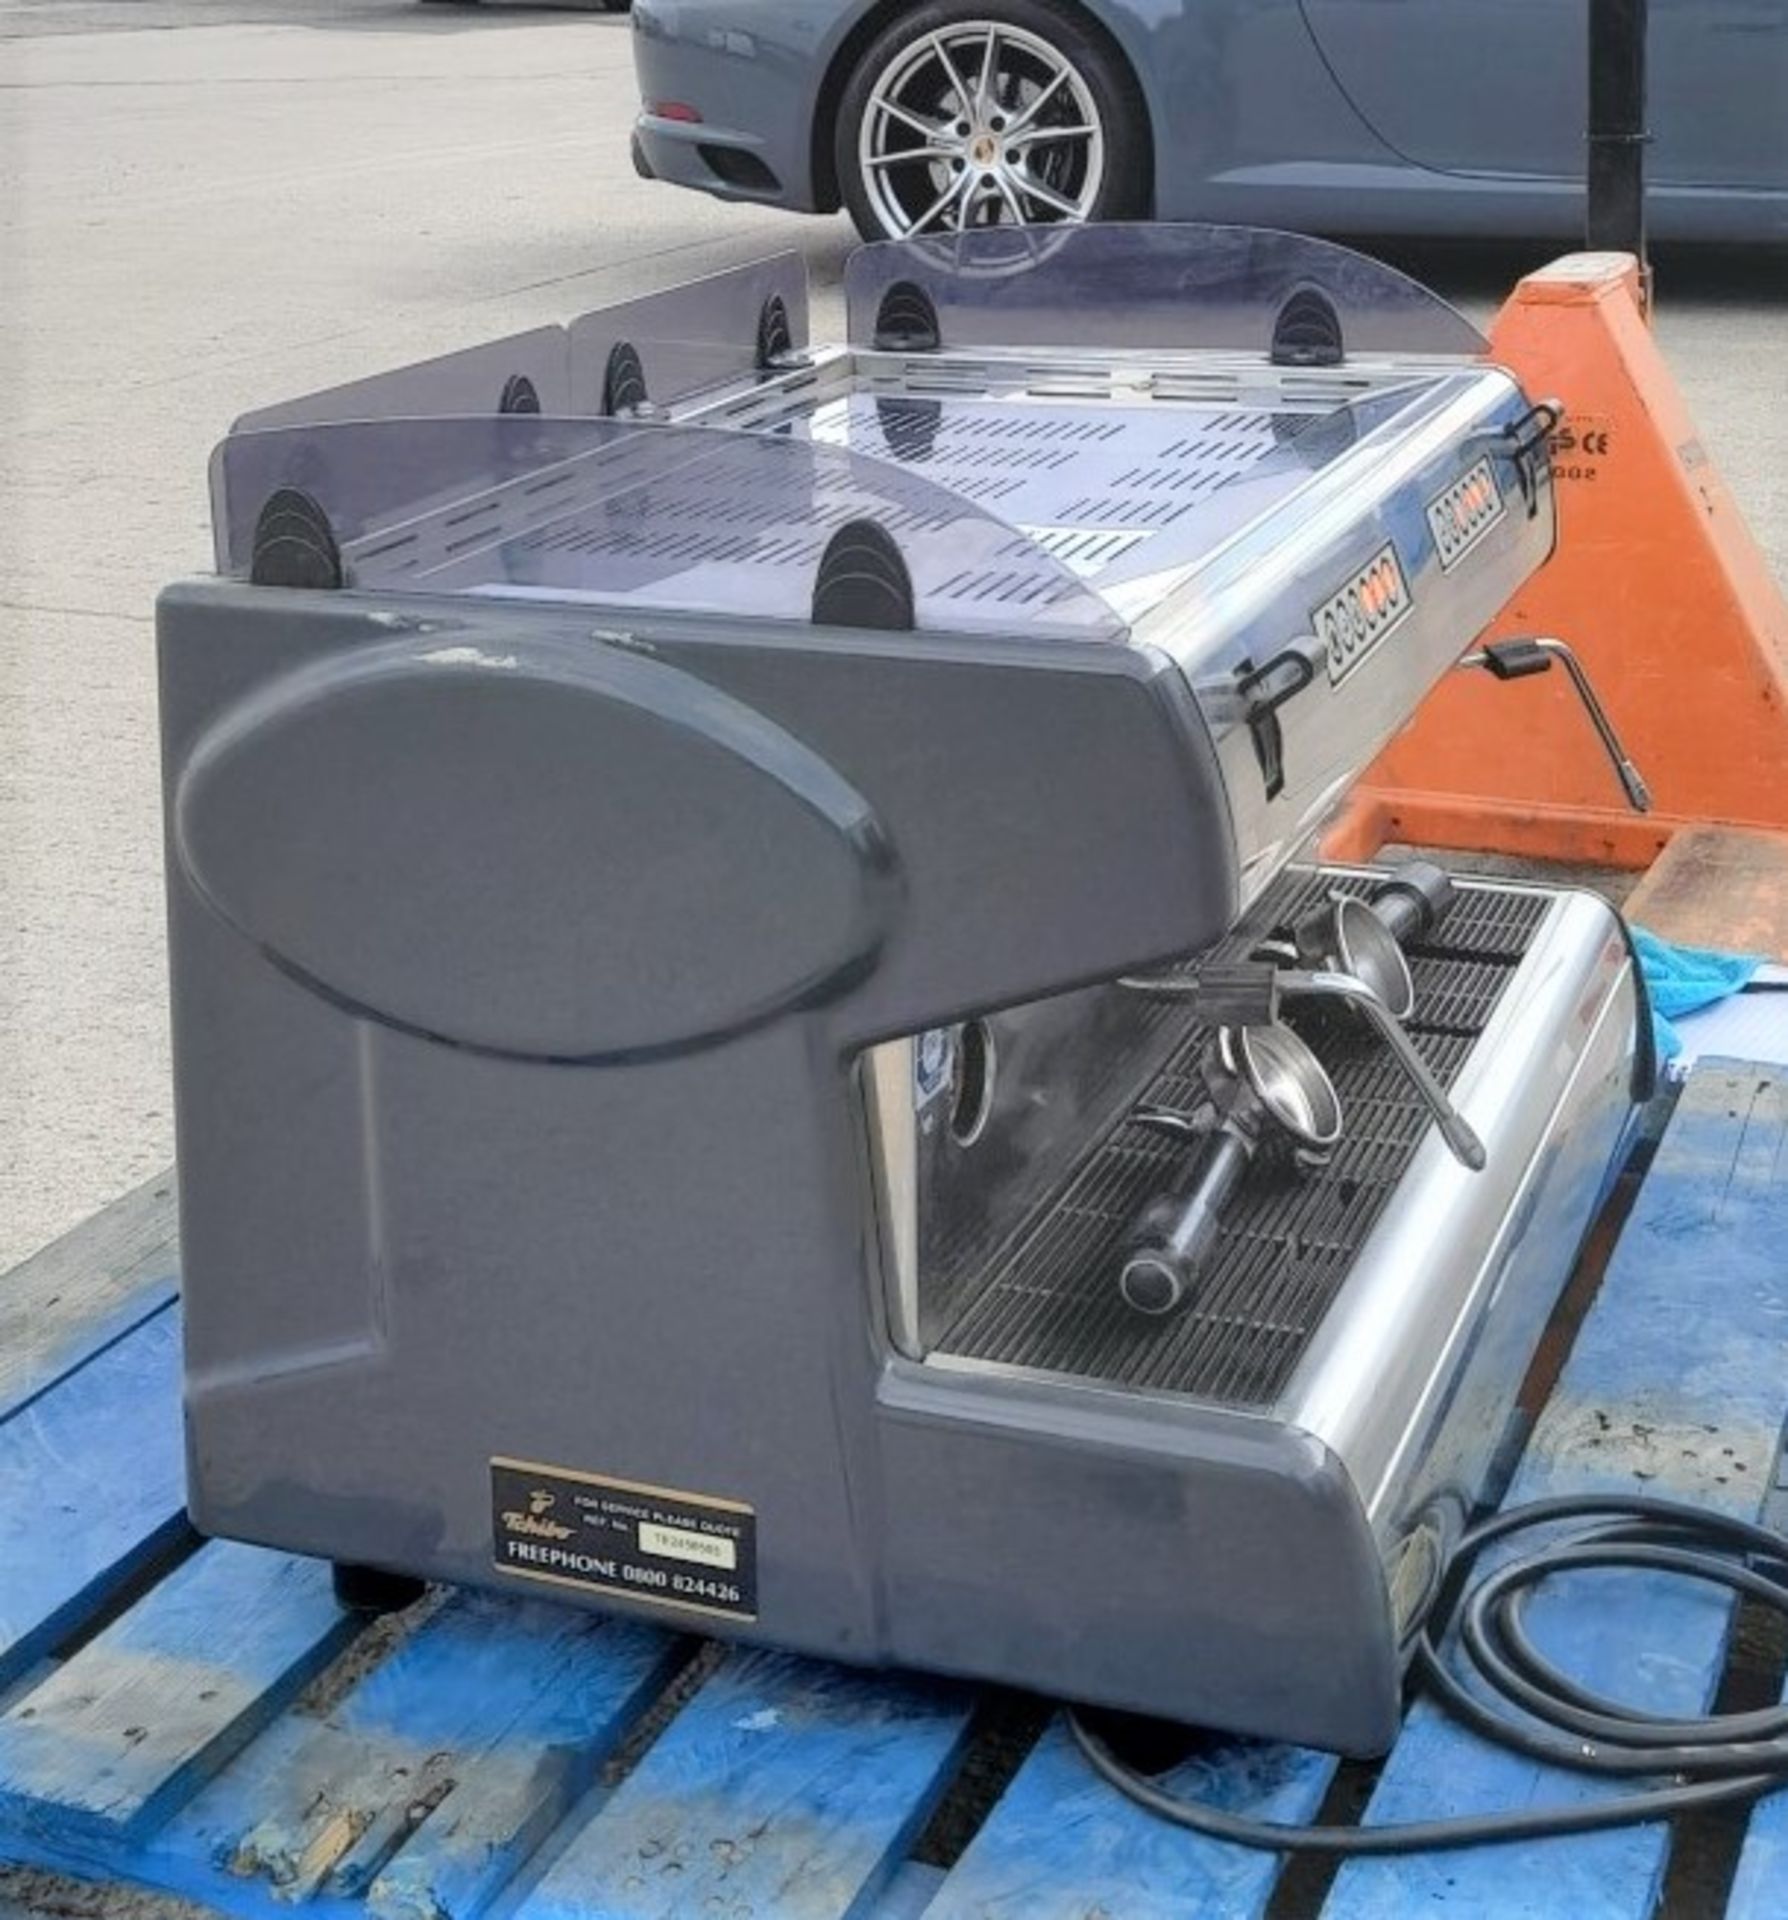 1 x Carimali Commercial Espresso Coffee Machine - CL011 - Location: Altrincham WA14 - Image 9 of 9